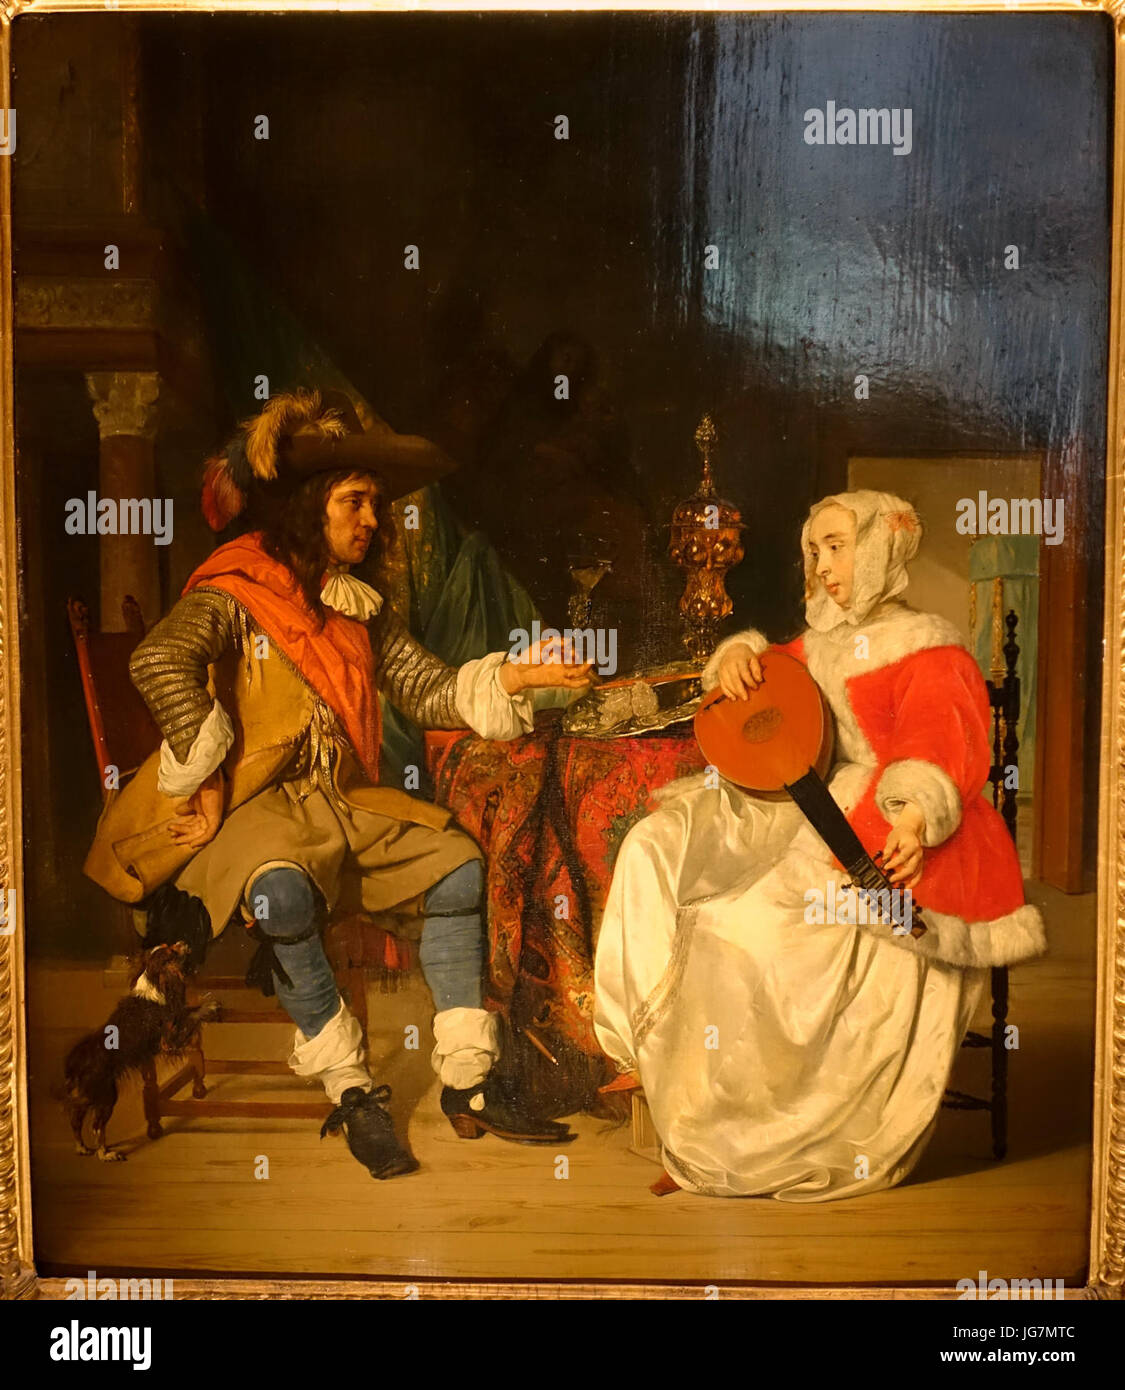 TơAAte-à-TơAAte, A Lady spielen eine laute und ein Kavalier, durch GabriơABl Metsu, c. 1662-1665, Öl auf Holz - Waddesdon Manor - Buckinghamshire, England - DSC07698 Stockfoto